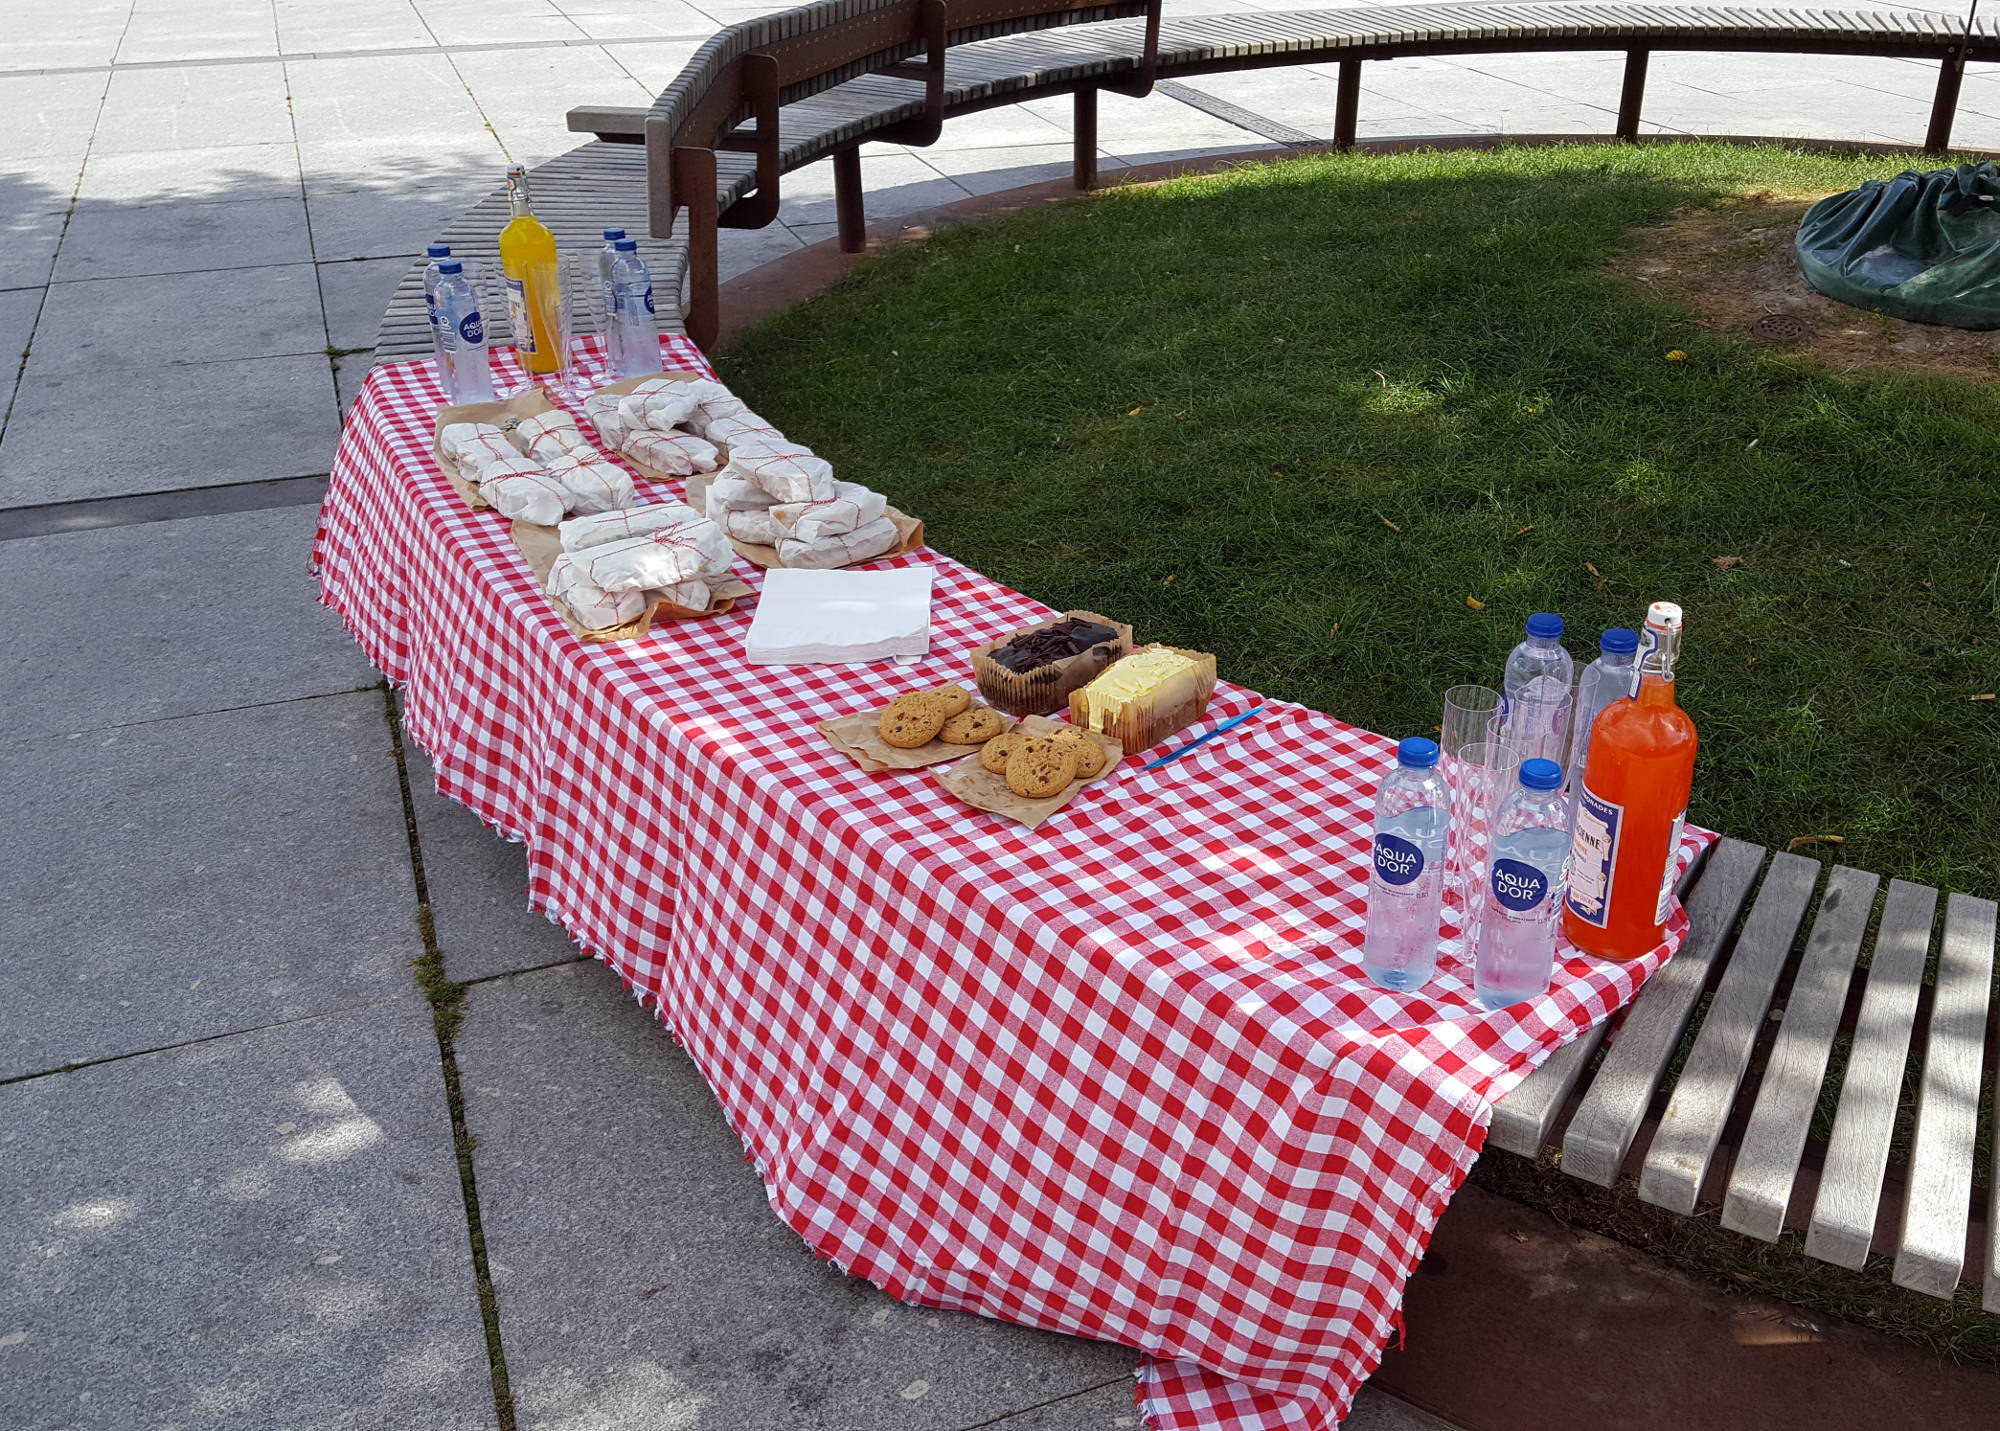 beCopenhagen picnic